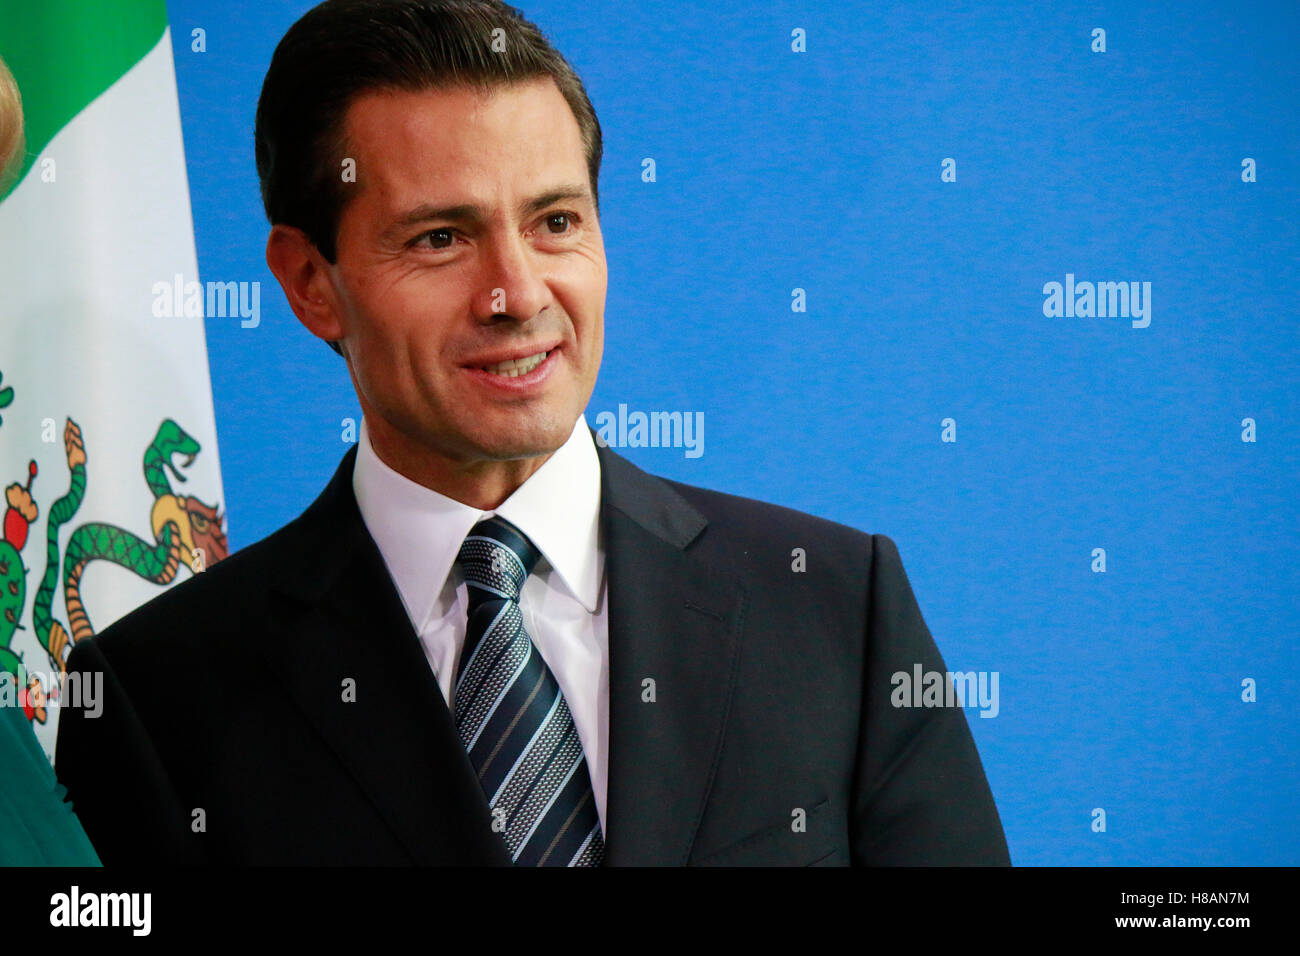 Enrique Peña Nieto - Treffen der dt. Bundeskanzlerin mit dem mexikanischen Praeisdenten, Bundeskanzleramt, 12. Aprile 2016, Berli Foto Stock